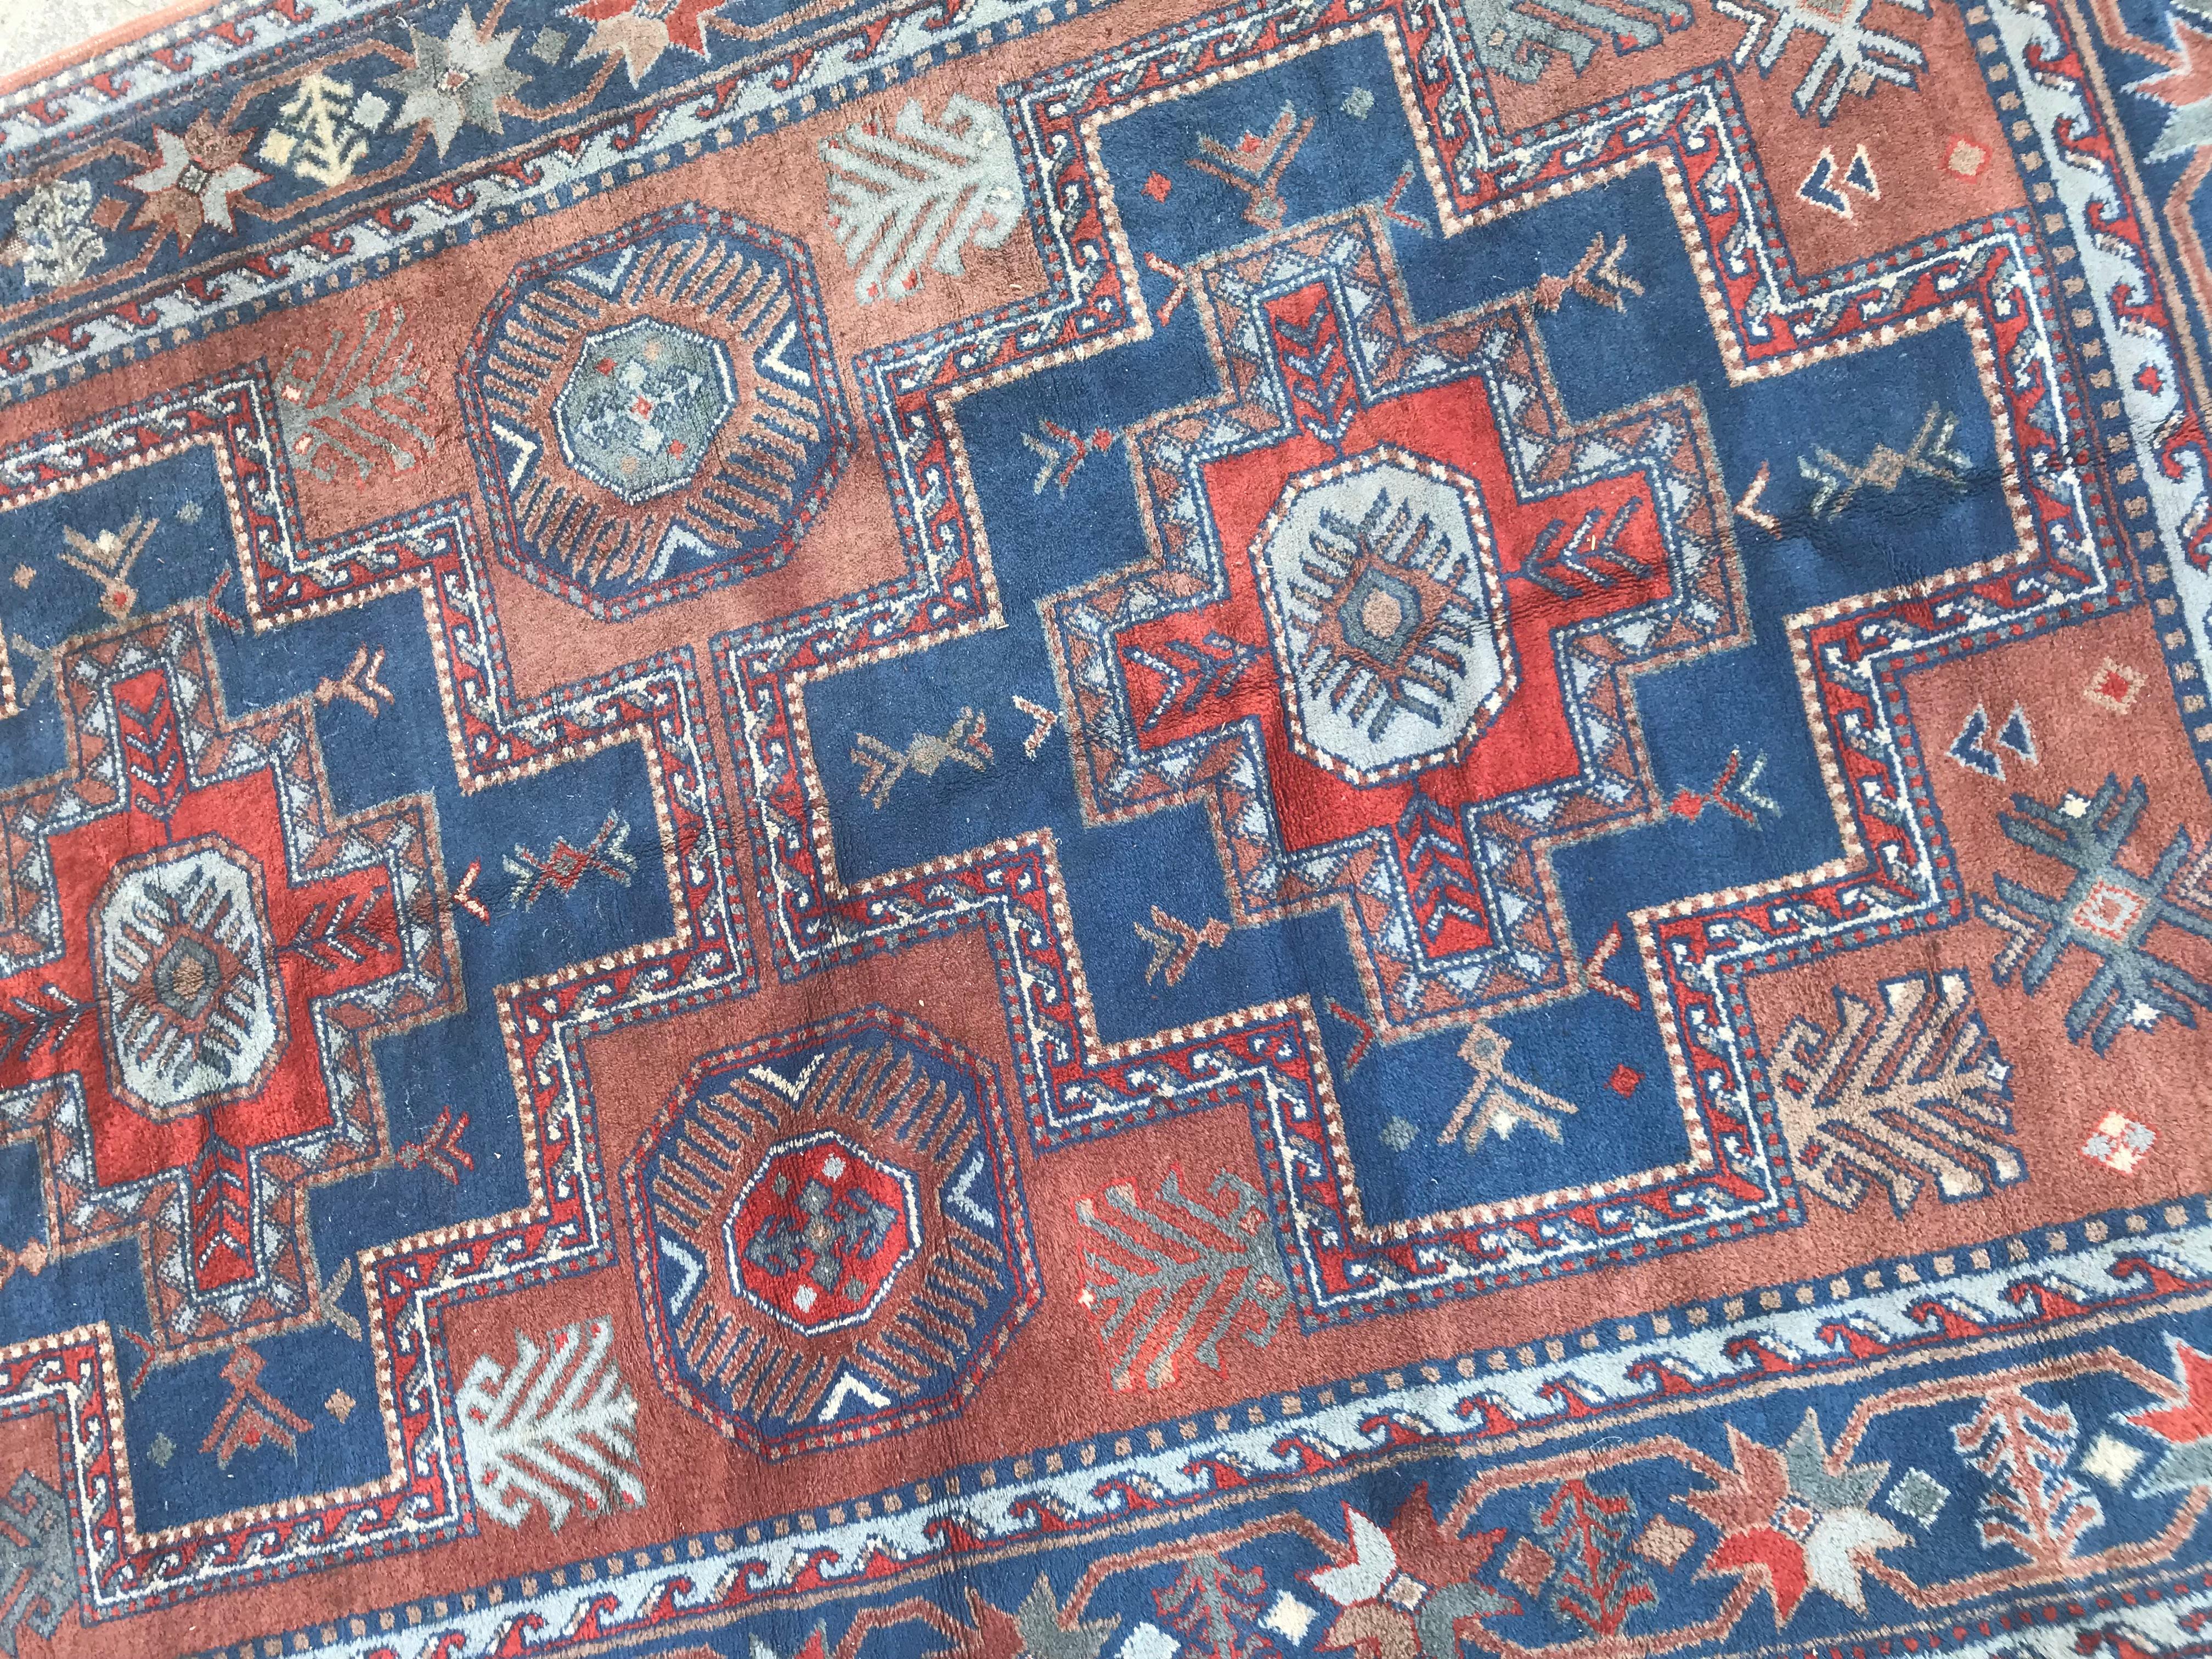 Schöner Sinkiang-Teppich mit kaukasischem geometrischem Muster und schönen Farben mit Orange, Grün und Blau, komplett handgeknüpft mit Wollsamt auf Baumwollgrund. Maße: 5ft 7in x 8ft 10in.